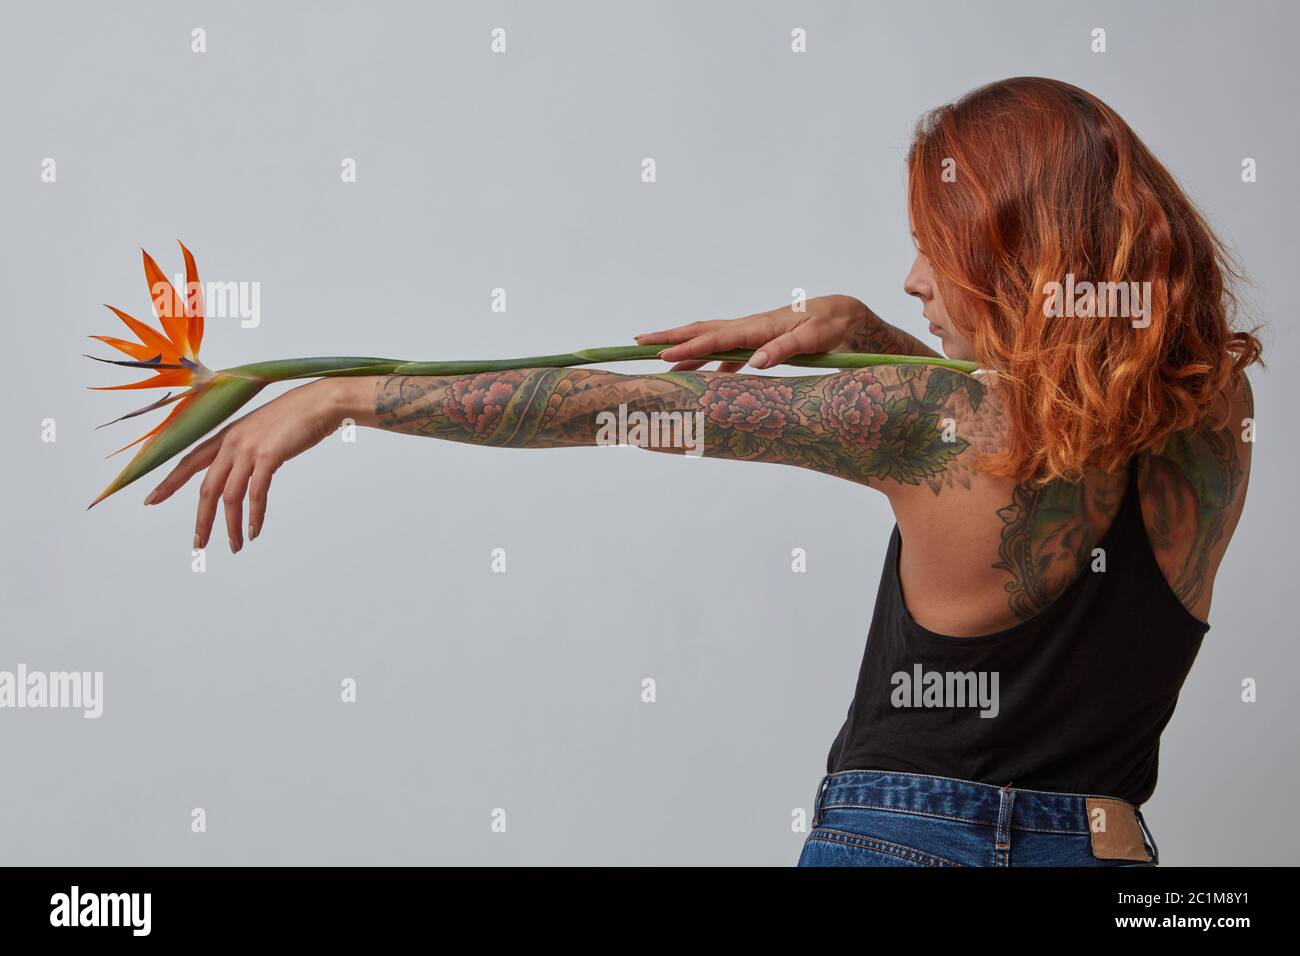 La fleur de strelitzia exotique décorera la main d'une femme avec un tatouage sur un fond gris avec un espace de copie pour le texte. Banque D'Images